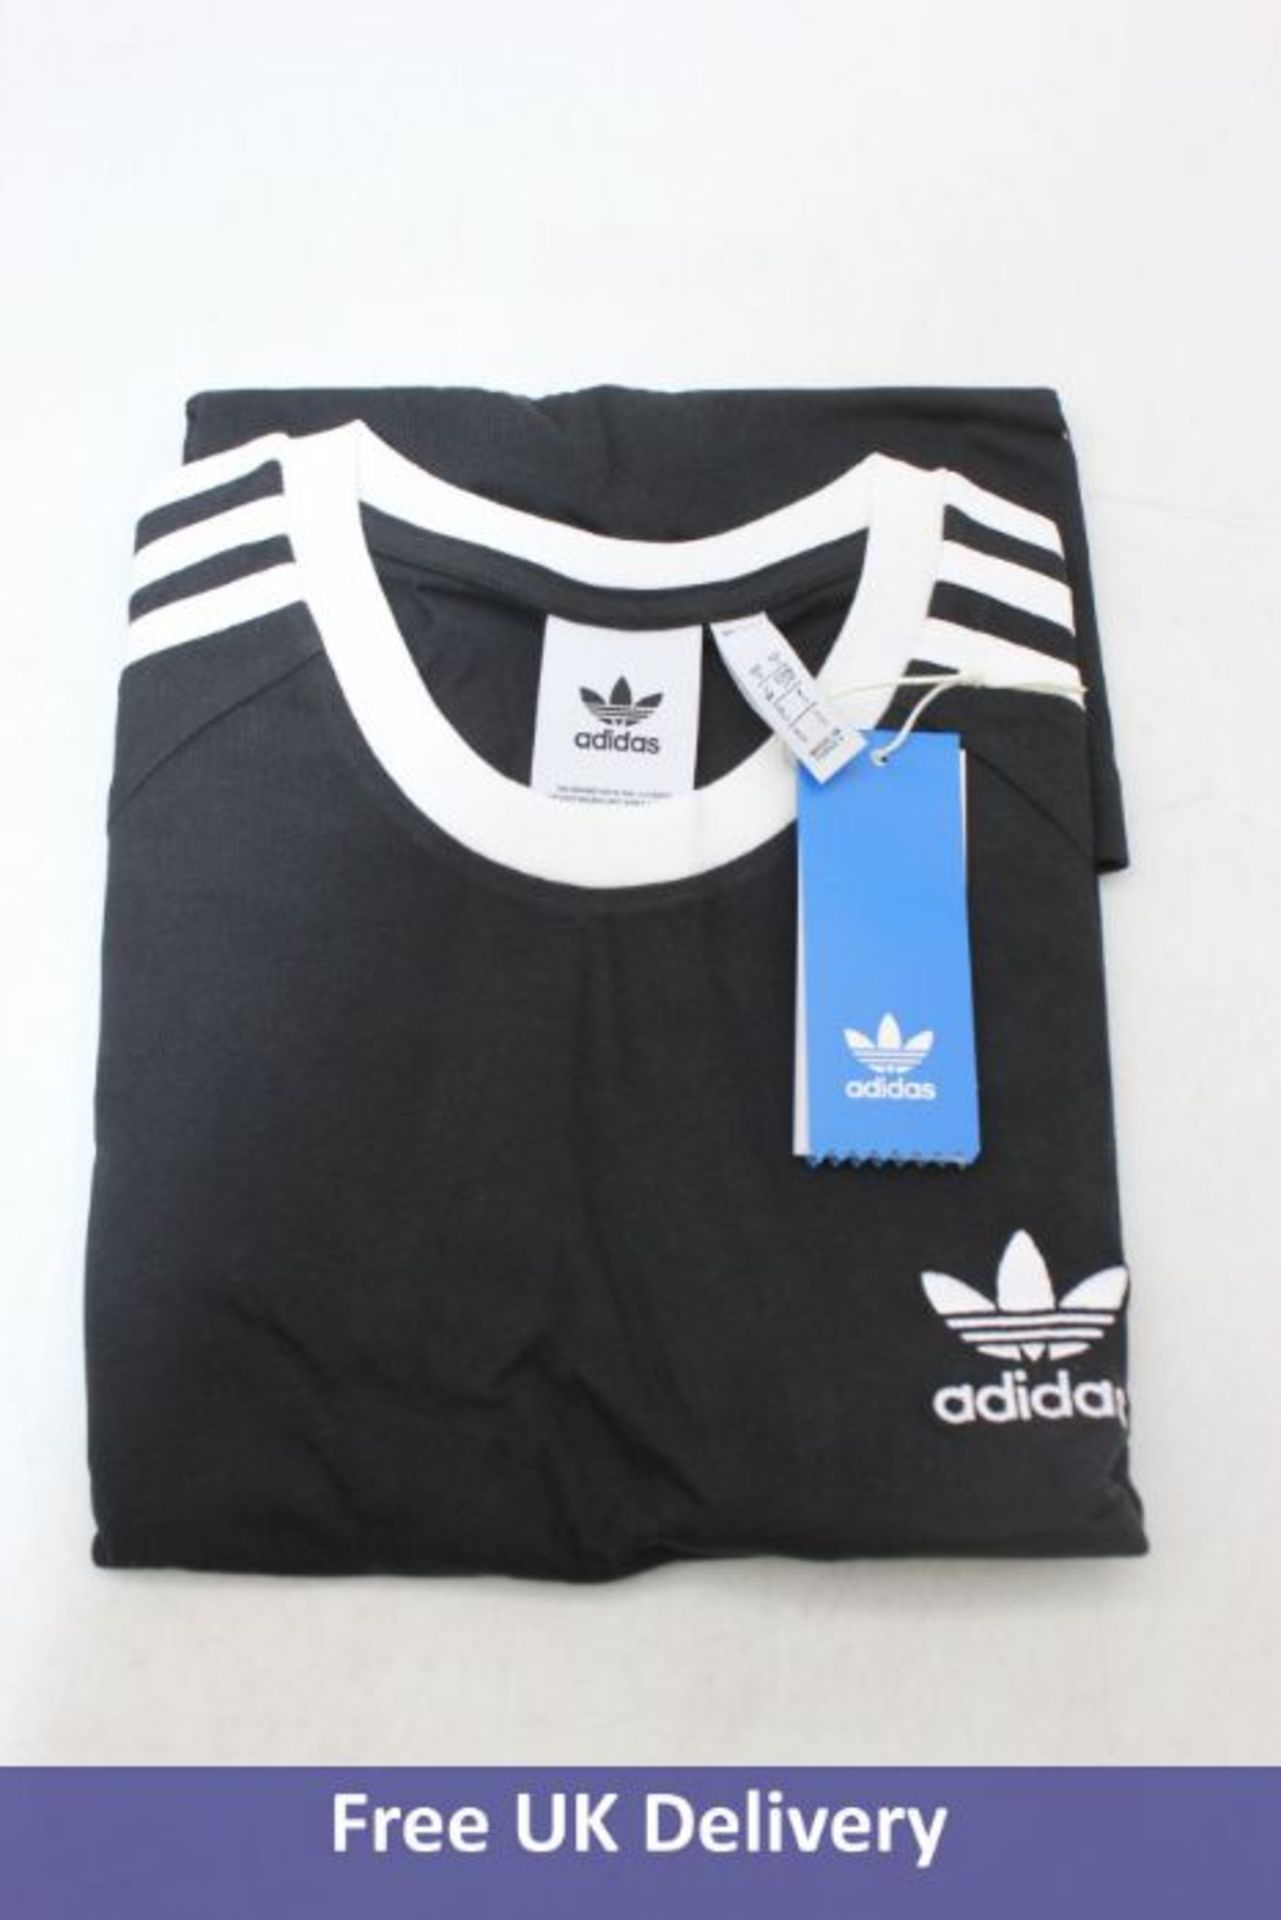 Five Adidas Originals Adicolor Classics 3-stripes Men's T-Shirts, Black, 2x S, 3x XL - Image 2 of 2